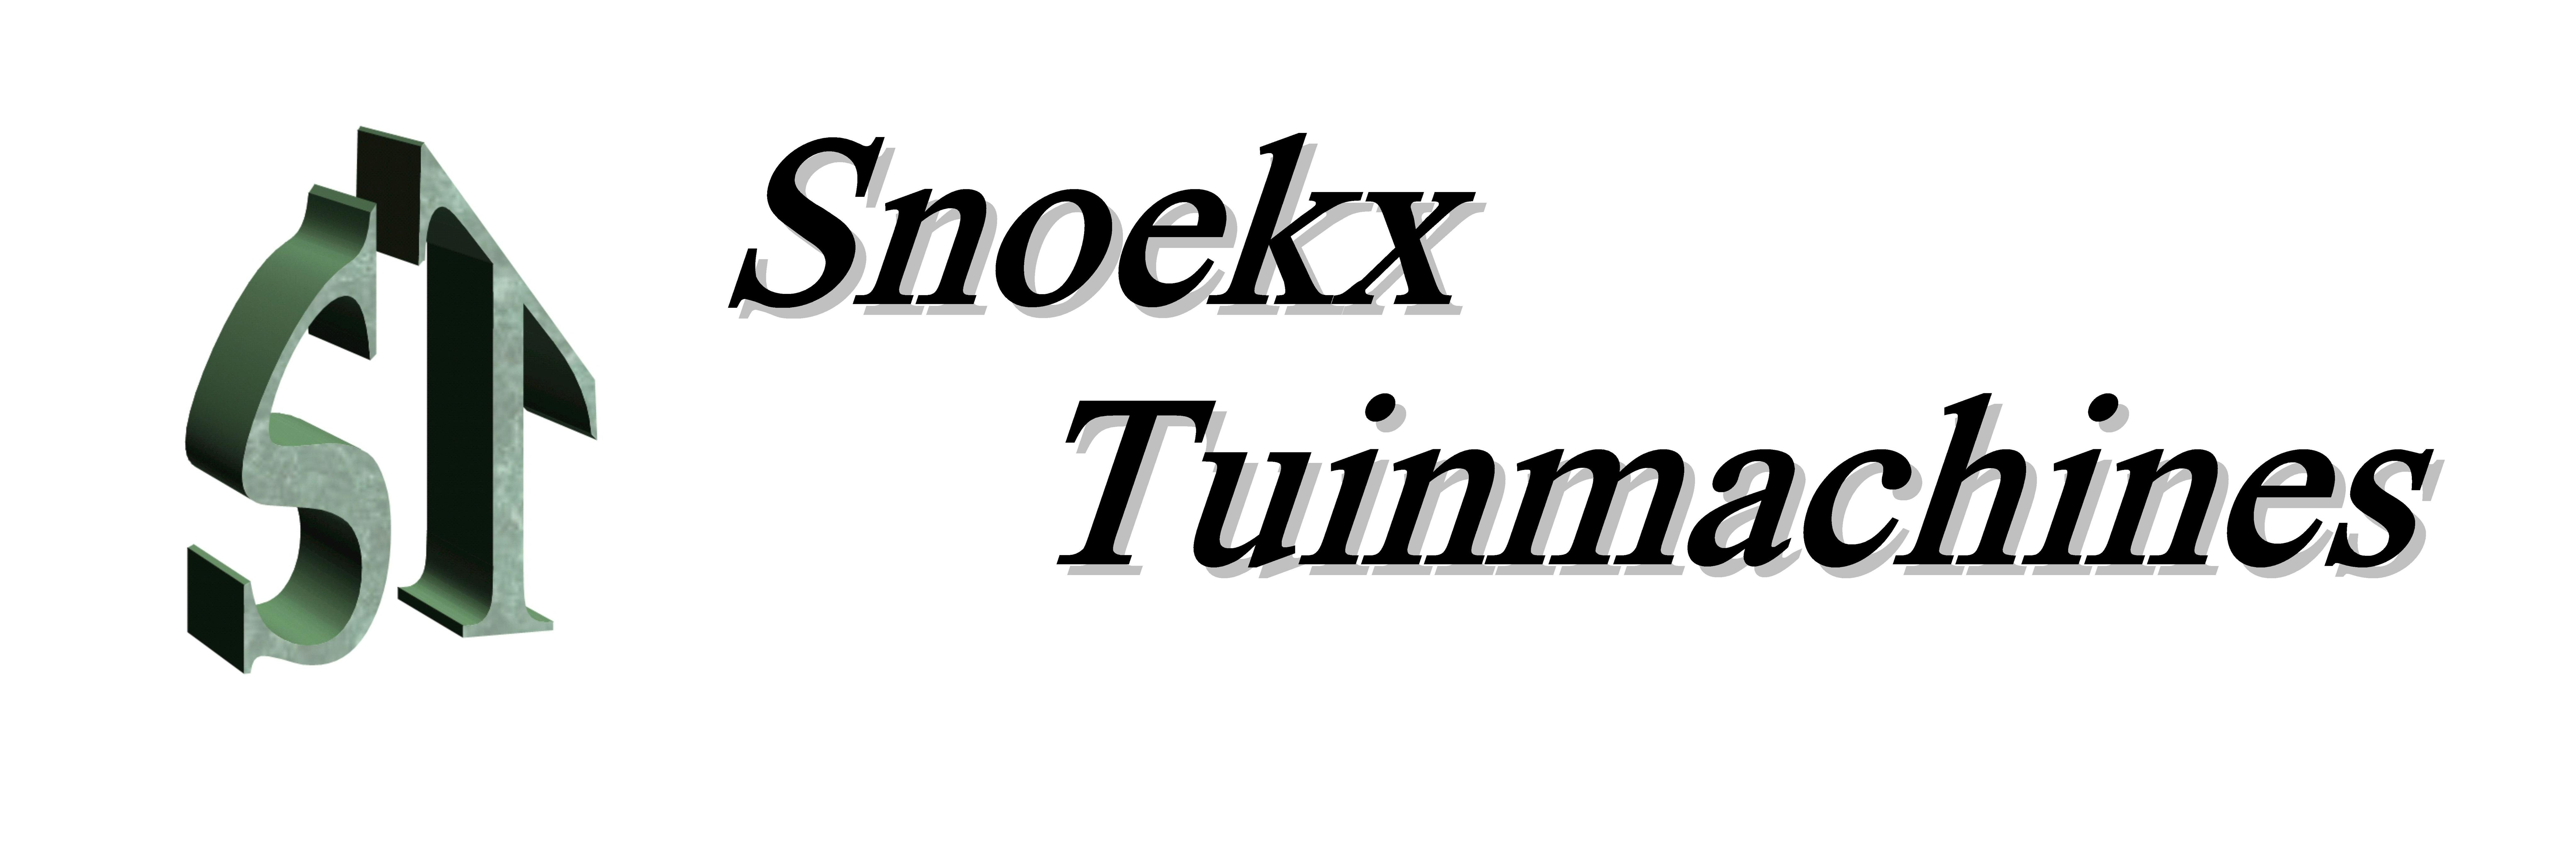 Company logo for 'Snoekx Tuinmachines'.